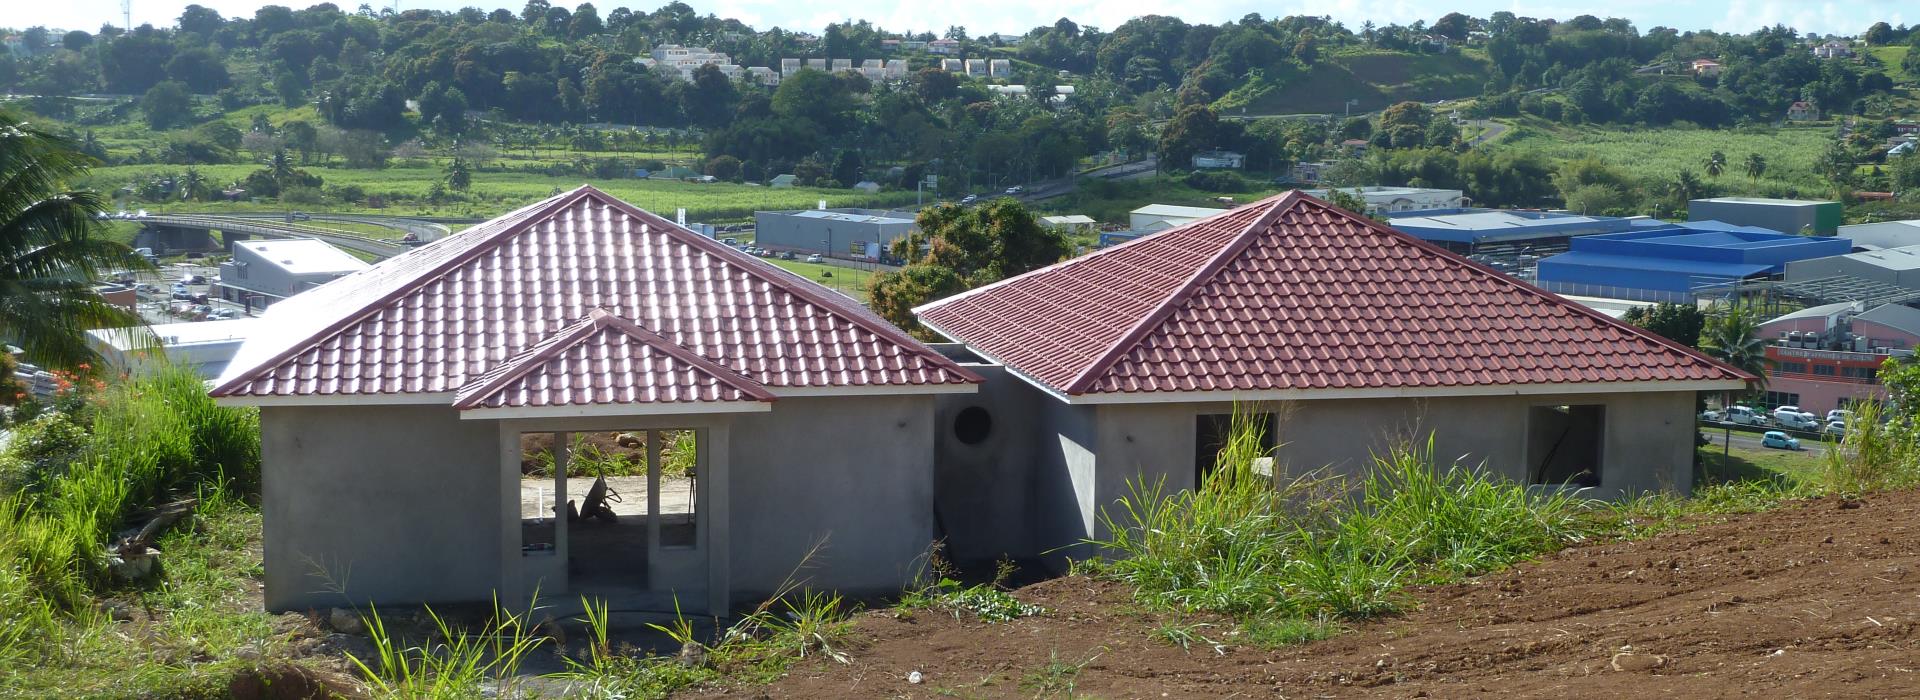 Tôle tuilée - Couverture - Toiture maison - TPG - Guadeloupe